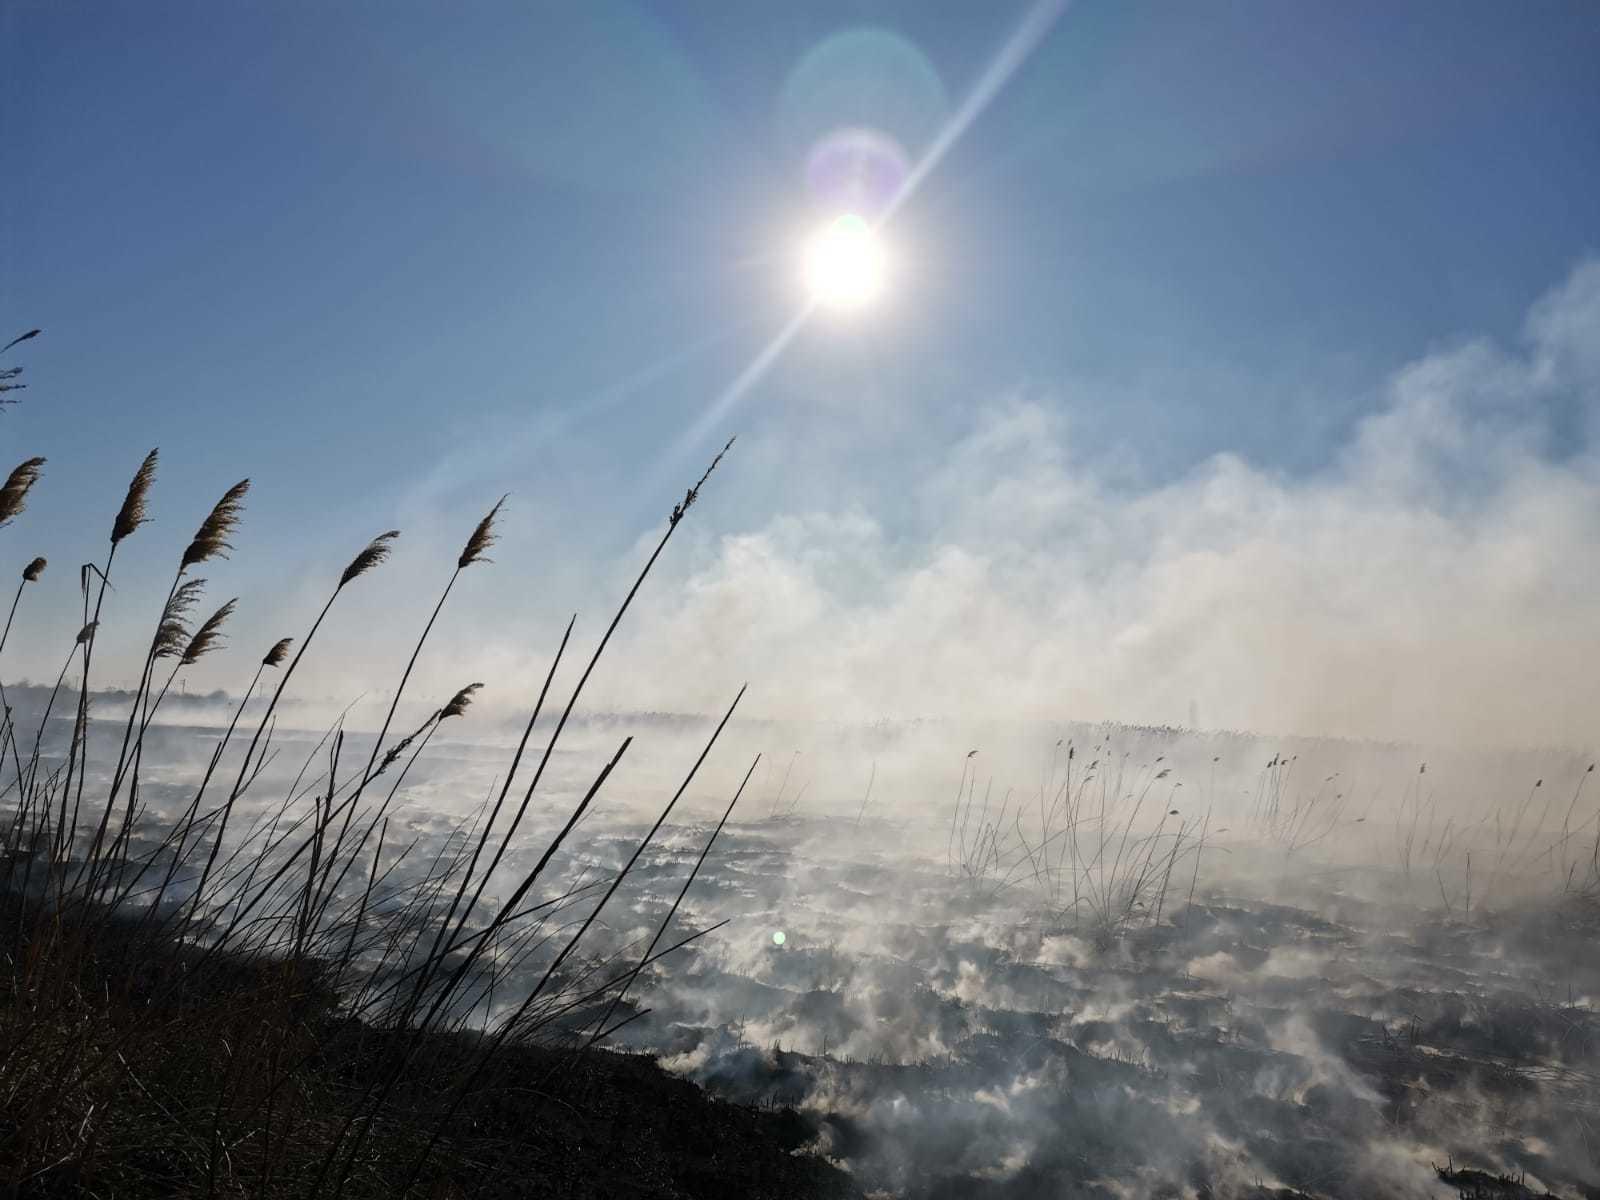 Pompierii din Bucureşti intervin pentru stingerea unui incendiu de vegetaţie uscată care se manifestă pe 20.000 de metri pătraţi, între localităţile Periş şi Dârza